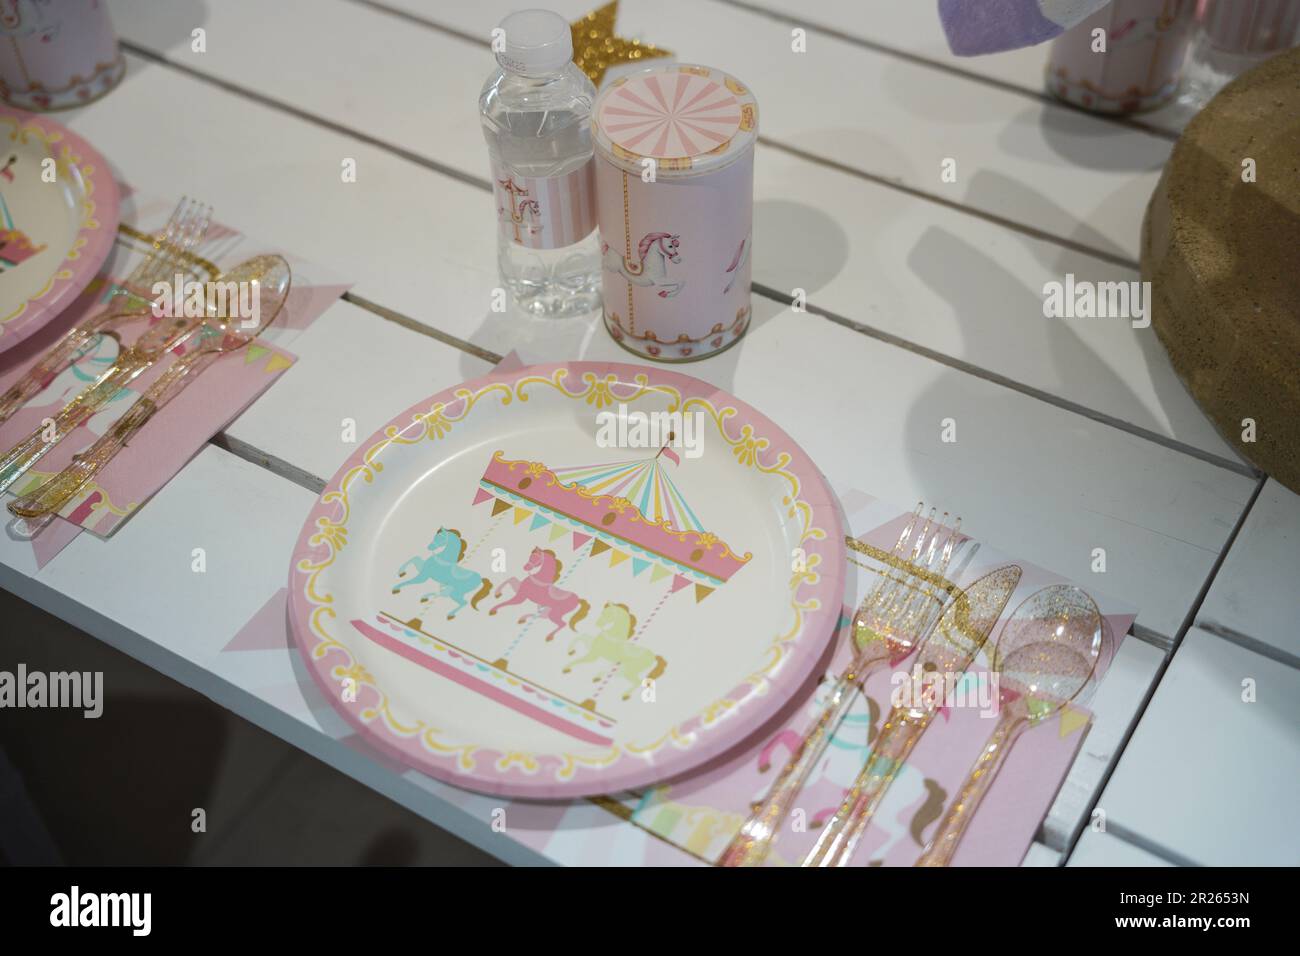 Pferdekarussell für Kinder oder Partytisch mit Karneval-Motiven mit Plastiktellern und Süßigkeiten. Festliche Dekoration für die Geburtstagsparty eines kleinen Mädchens mit Lunch Ta Stockfoto